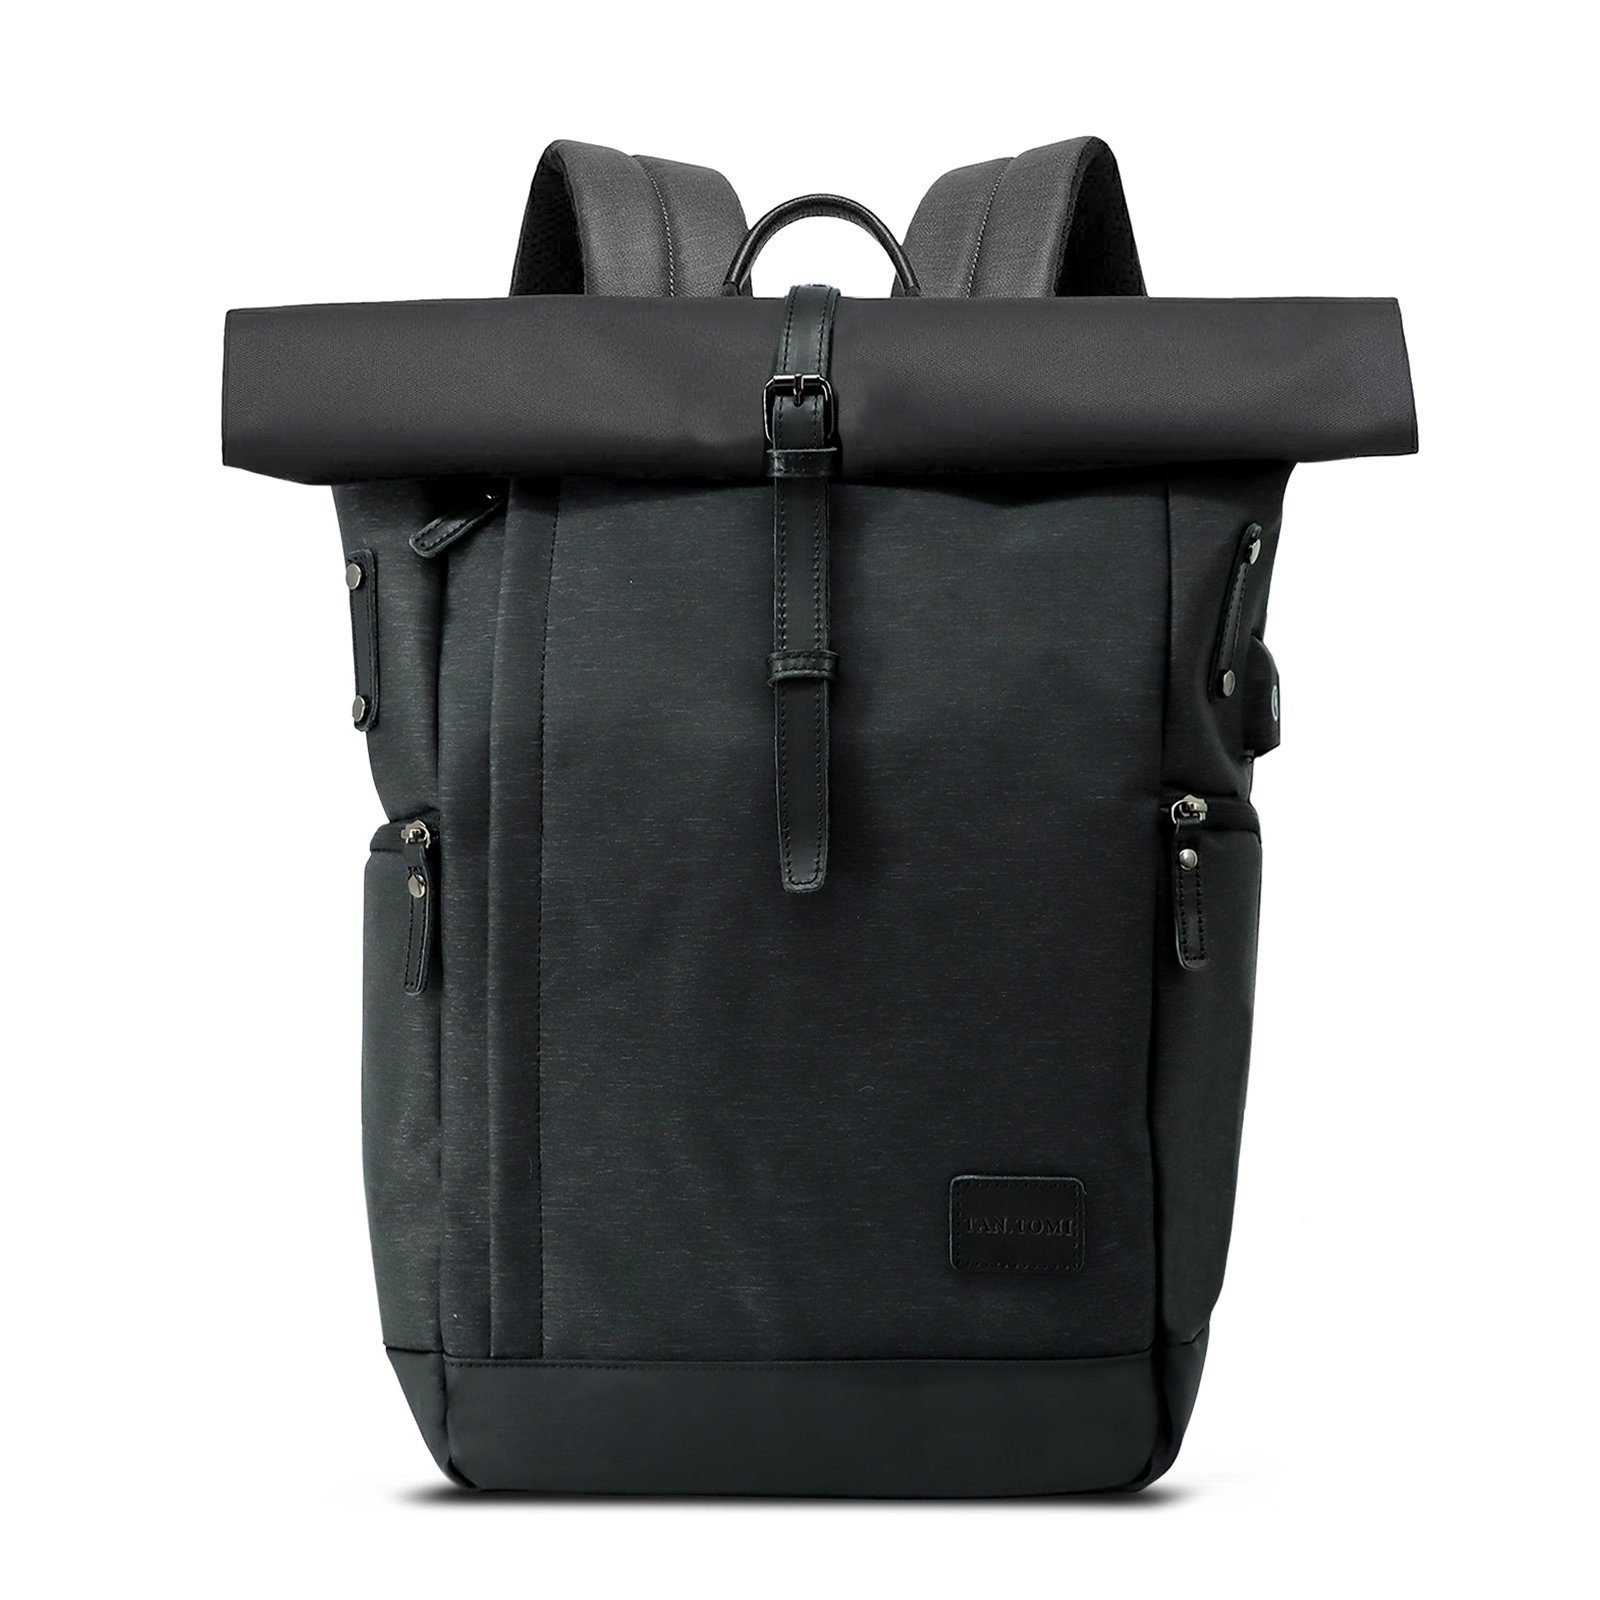 Rolltop Herren Schwarz lässiger Damen Freizeitrucksack USB-Ladebuchse Backpack, Rucksack Leichtgewichtiger, mit Schultasche TAN.TOMI Stilvolle Laptop-Rucksack Groß